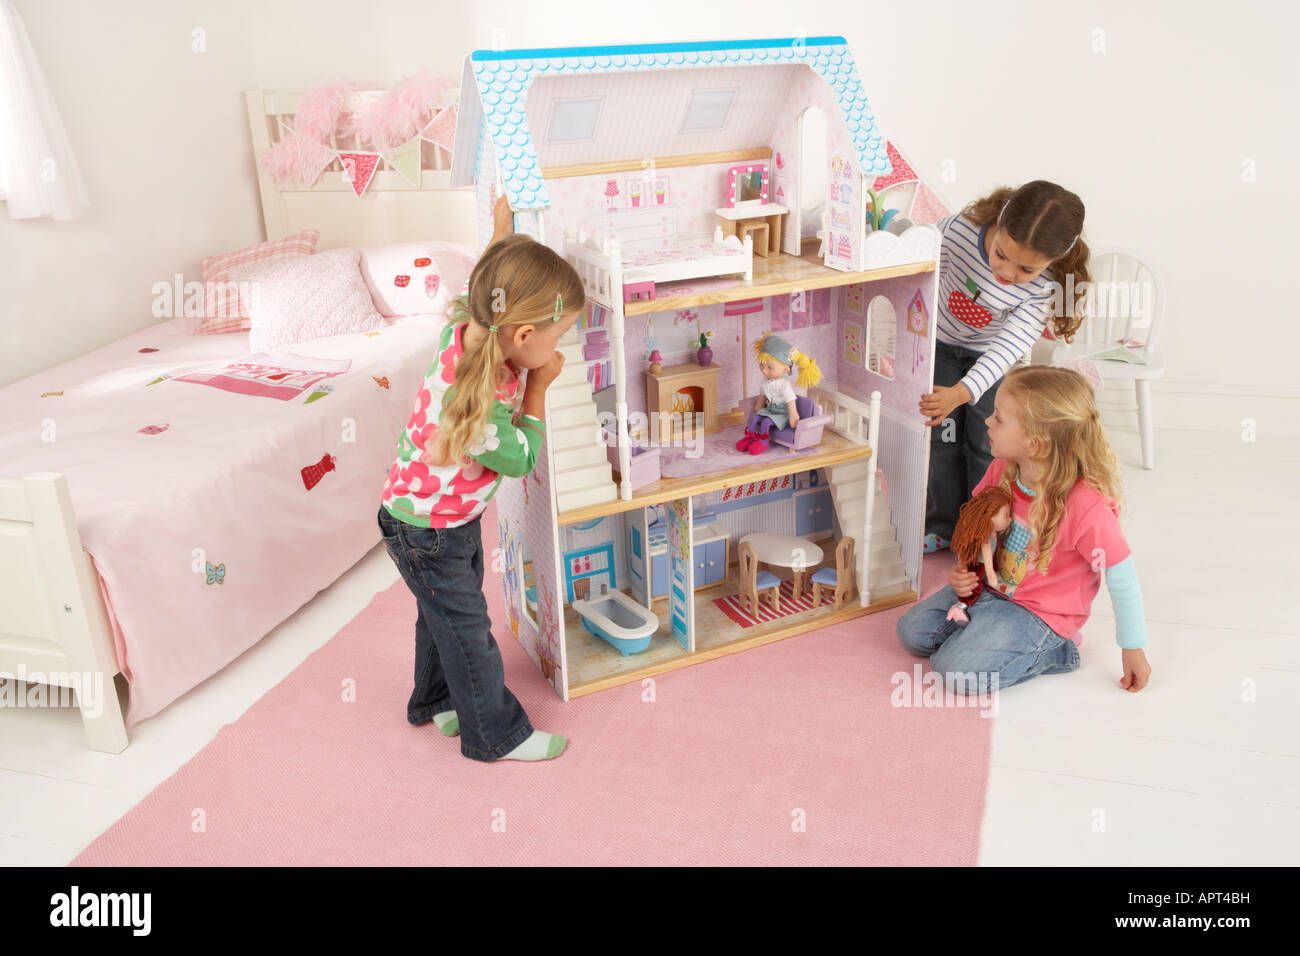 Trois jeunes filles jouer dans une chambre avec une maison de poupées Banque D'Images